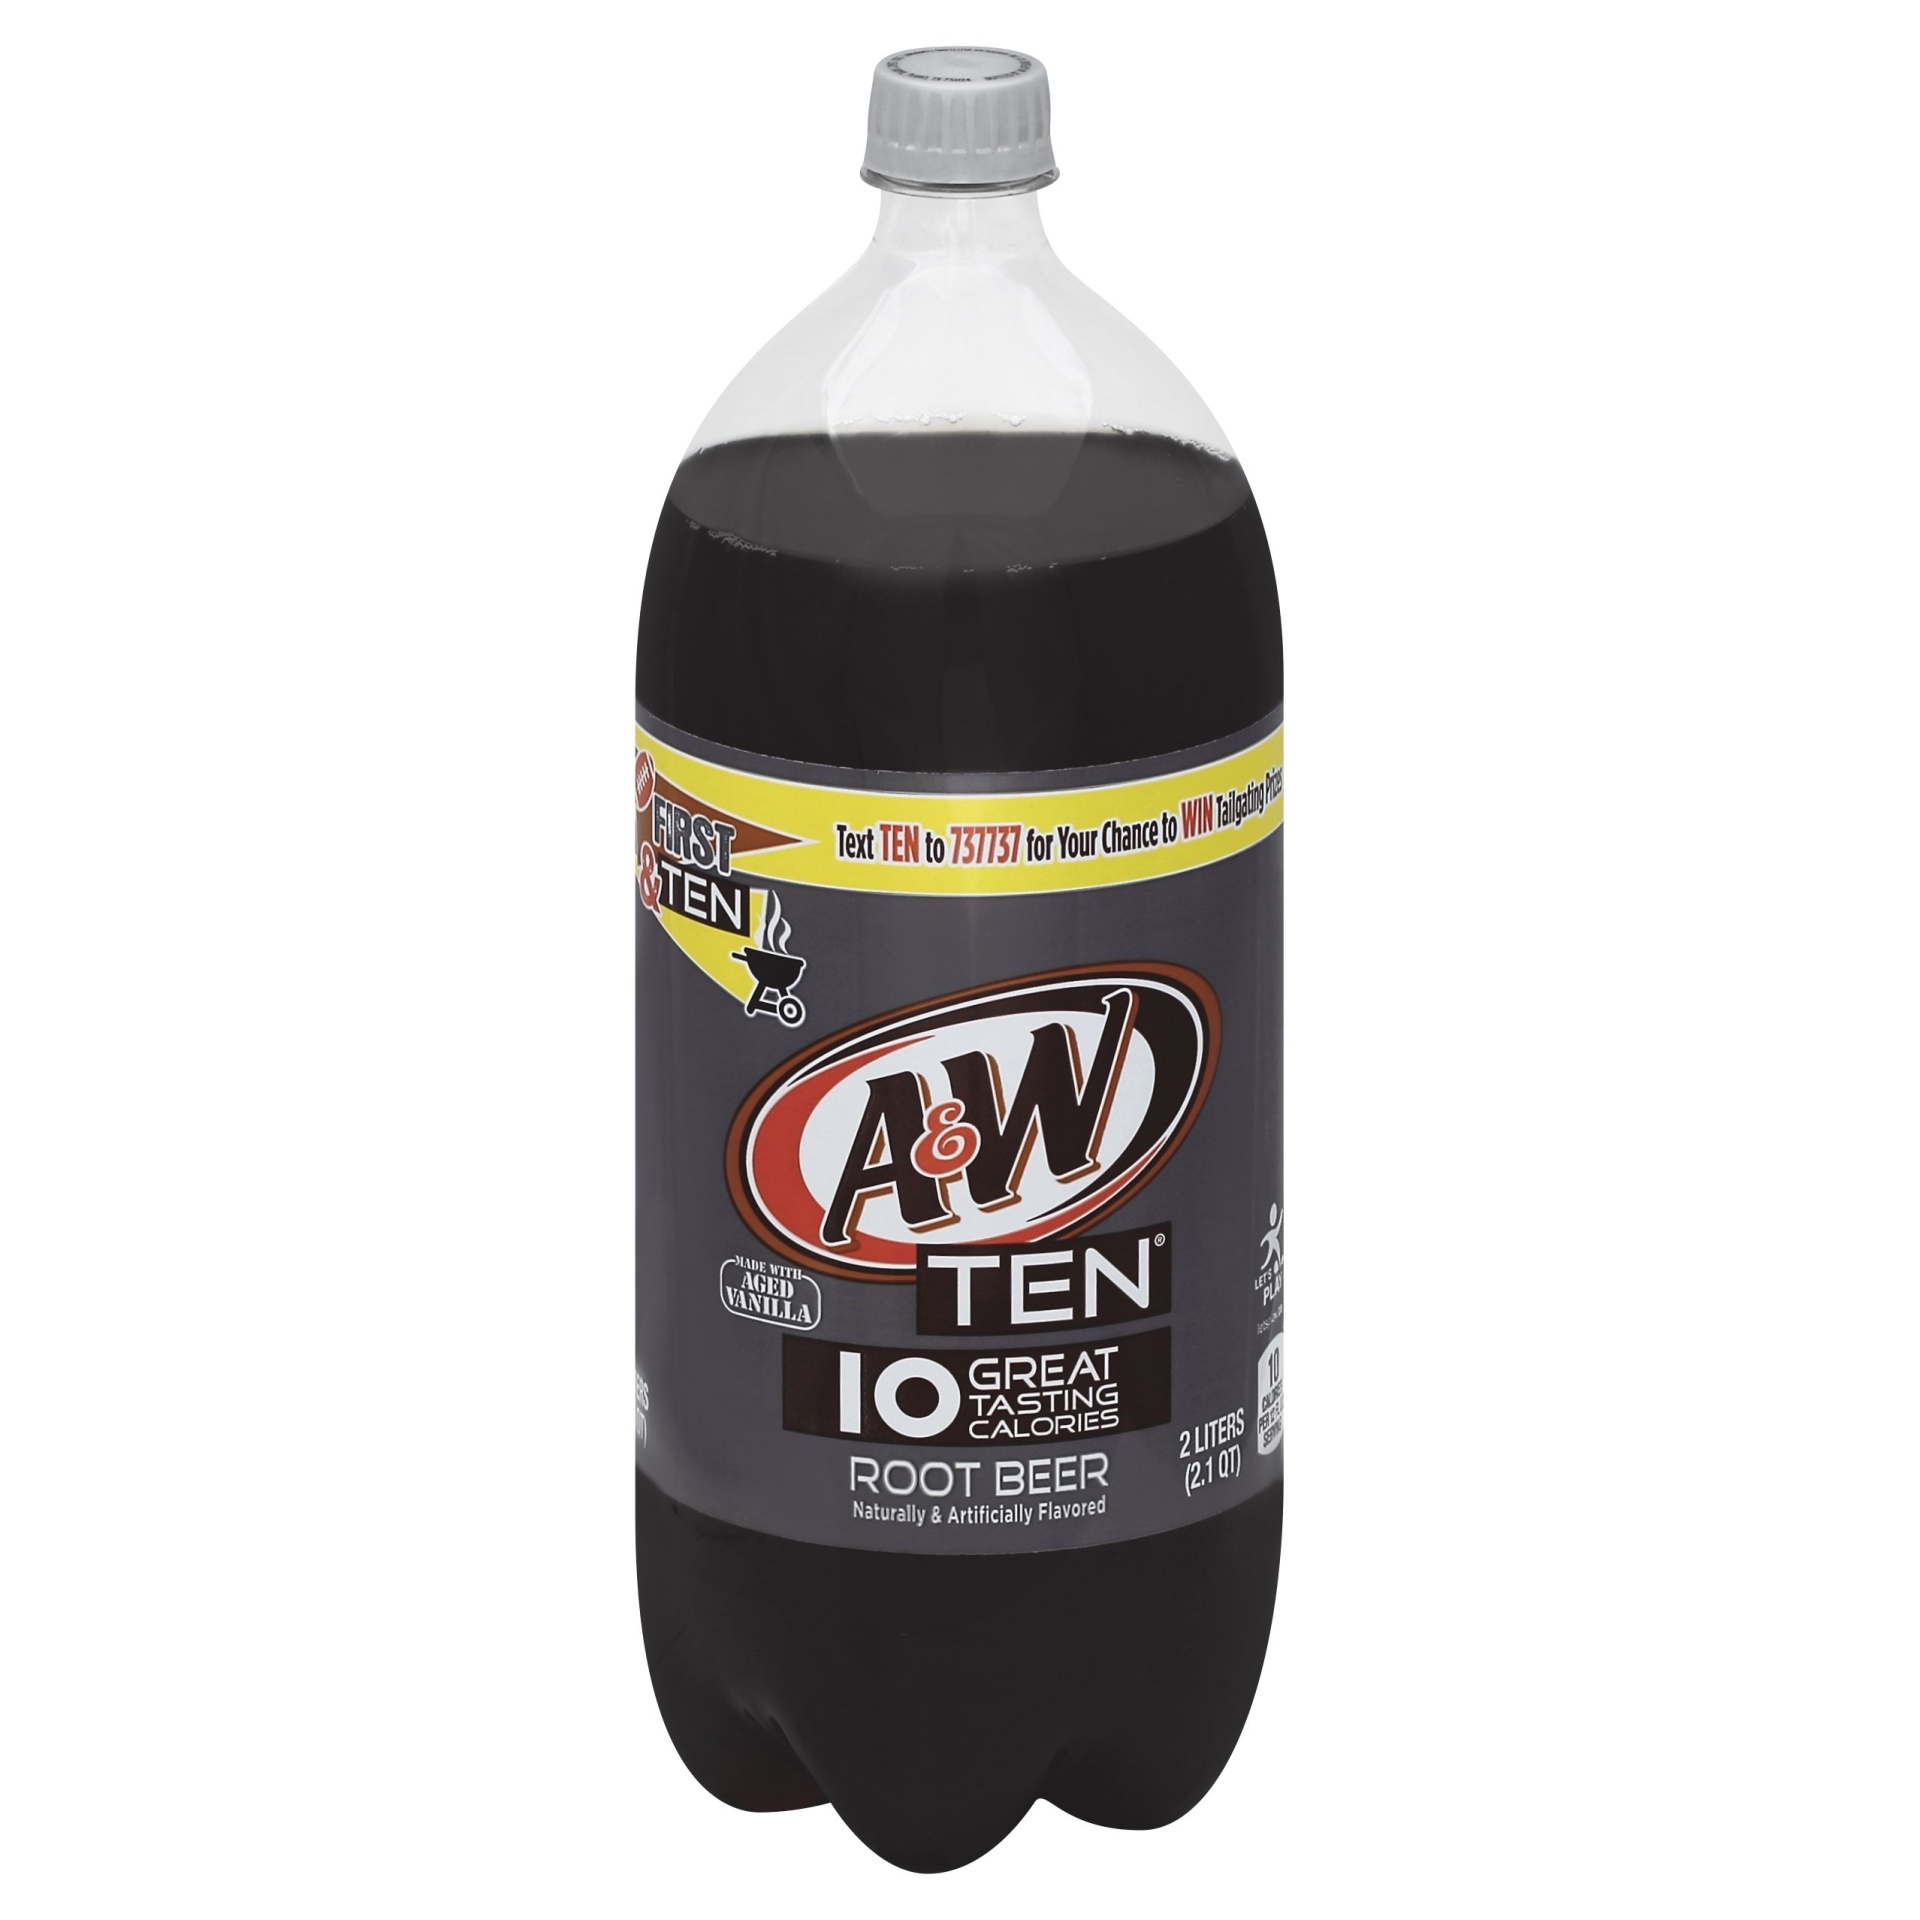 slide 1 of 2, A&W TEN Root Beer Bottle, 2 liter